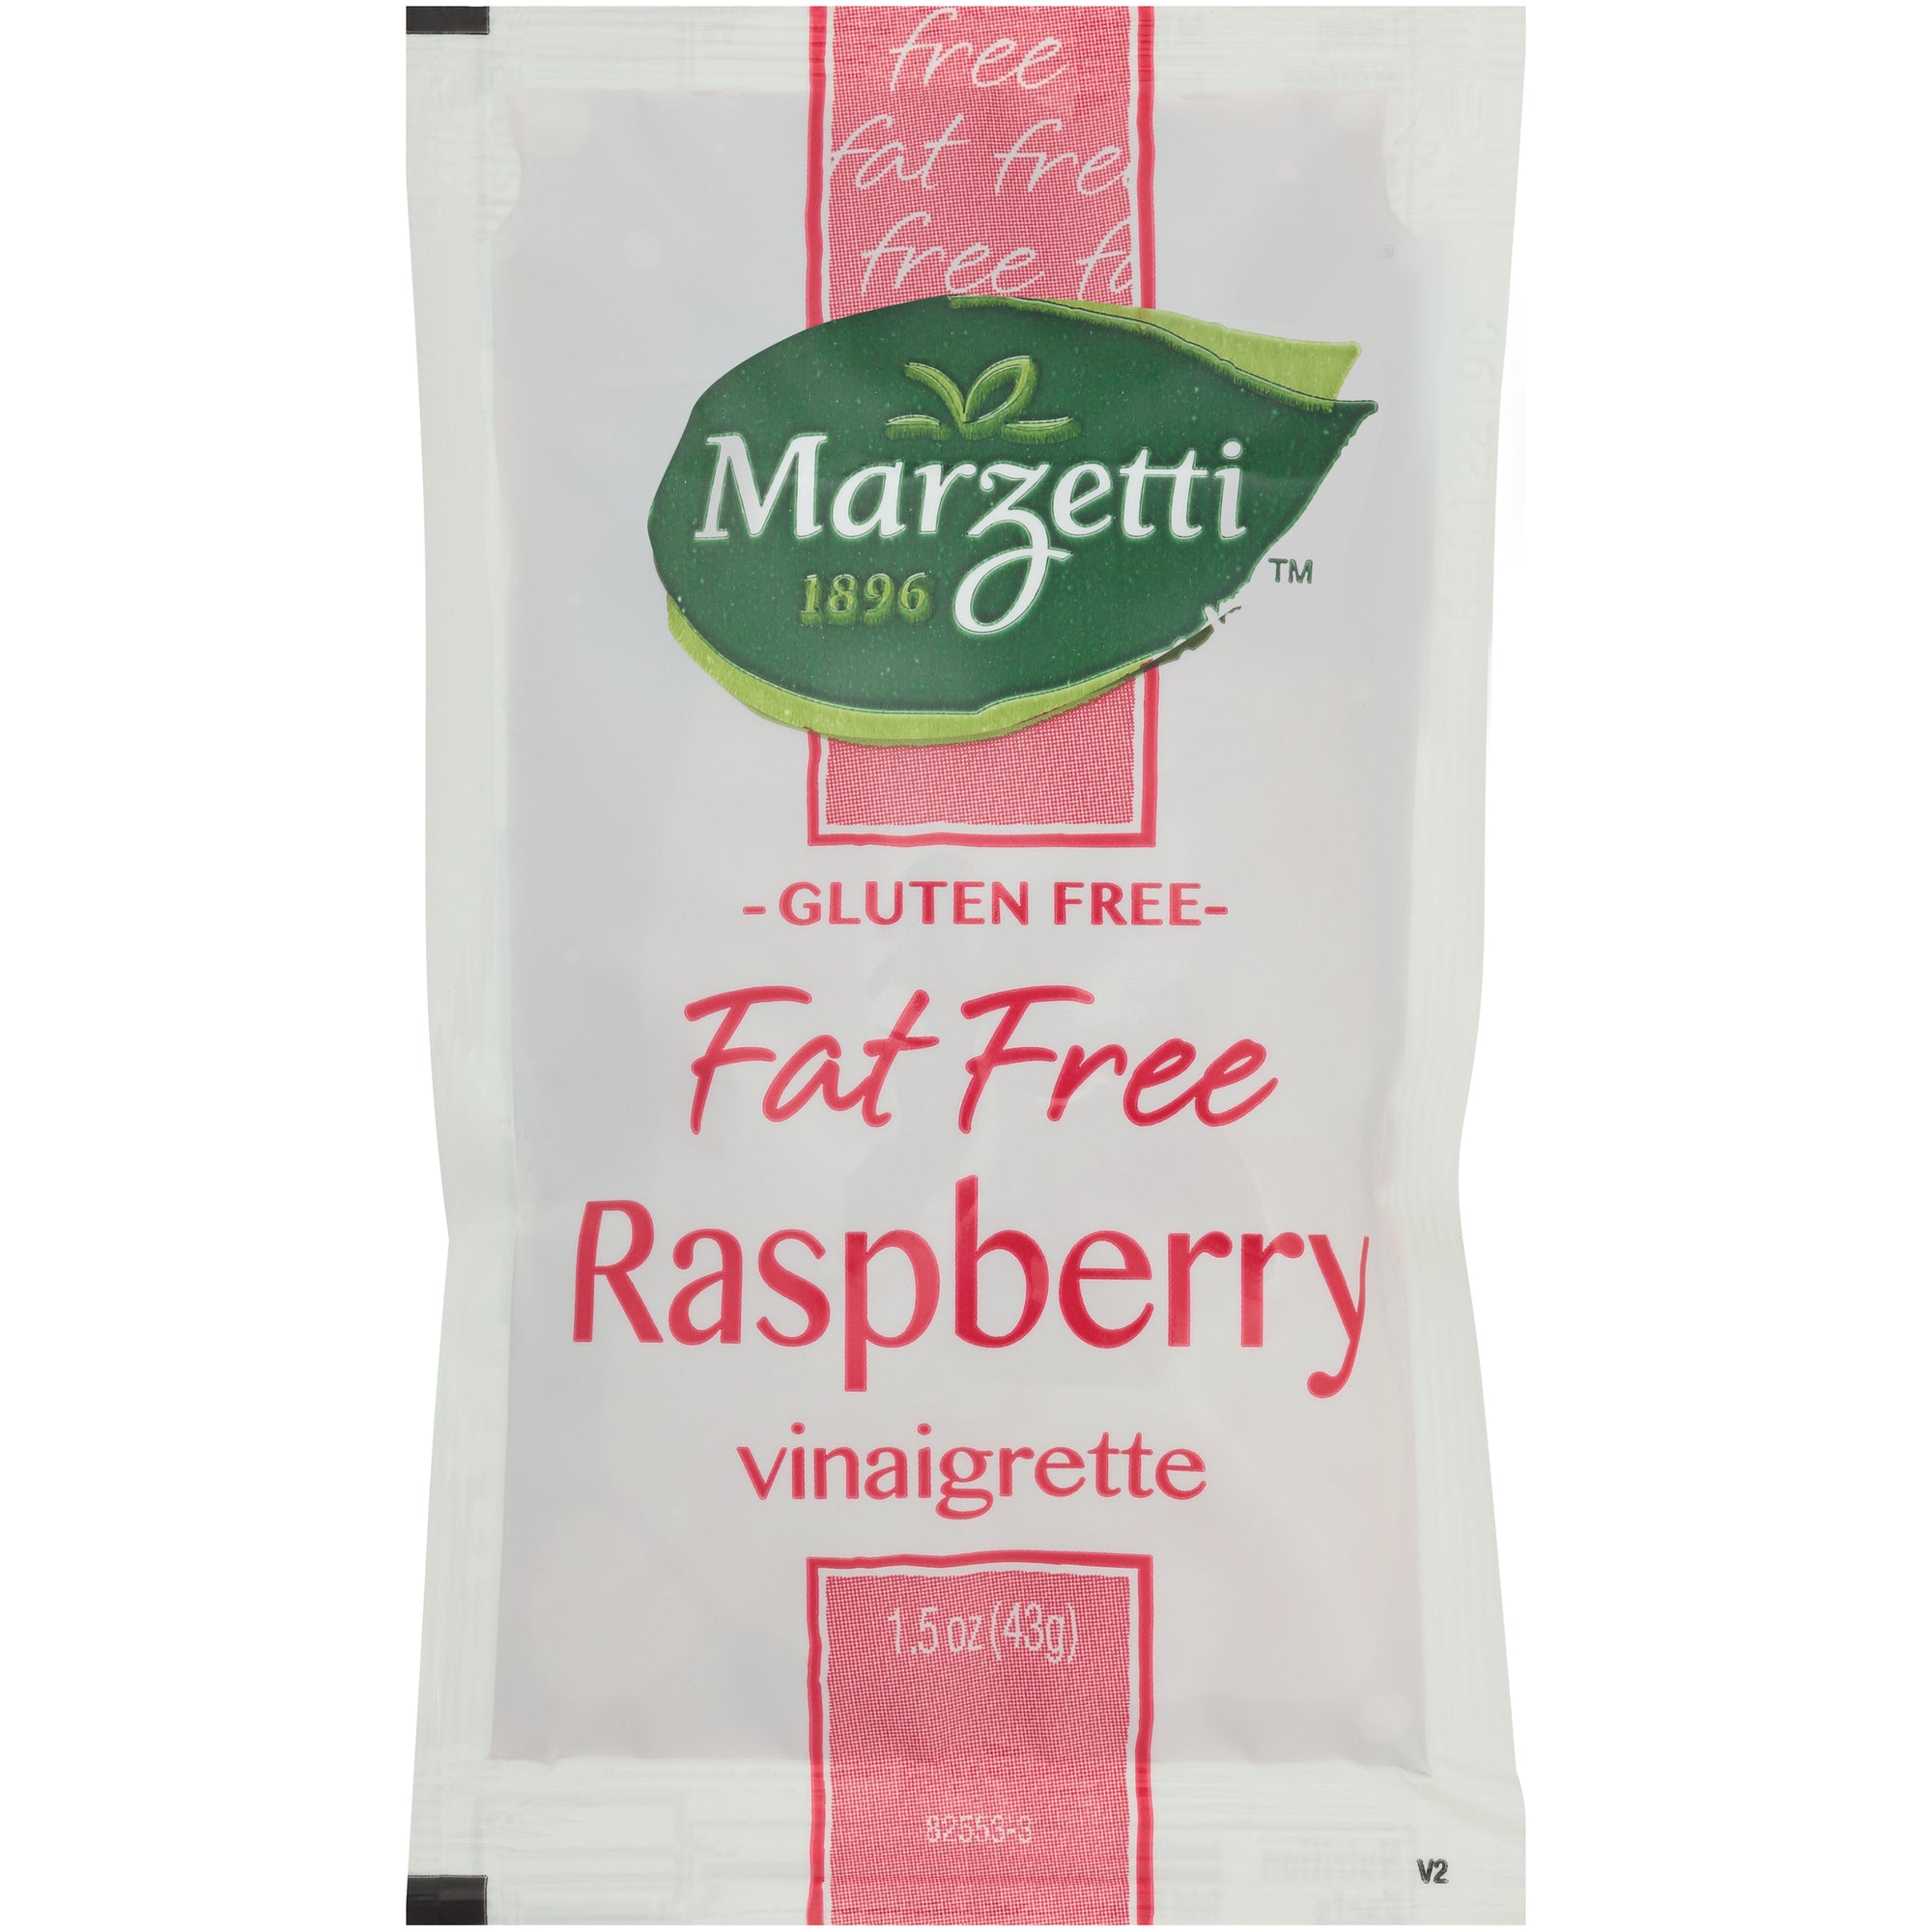 MARZETTI FAT FREE RASPBERRY VINAIGRETTE, 60 -1.5 OZ